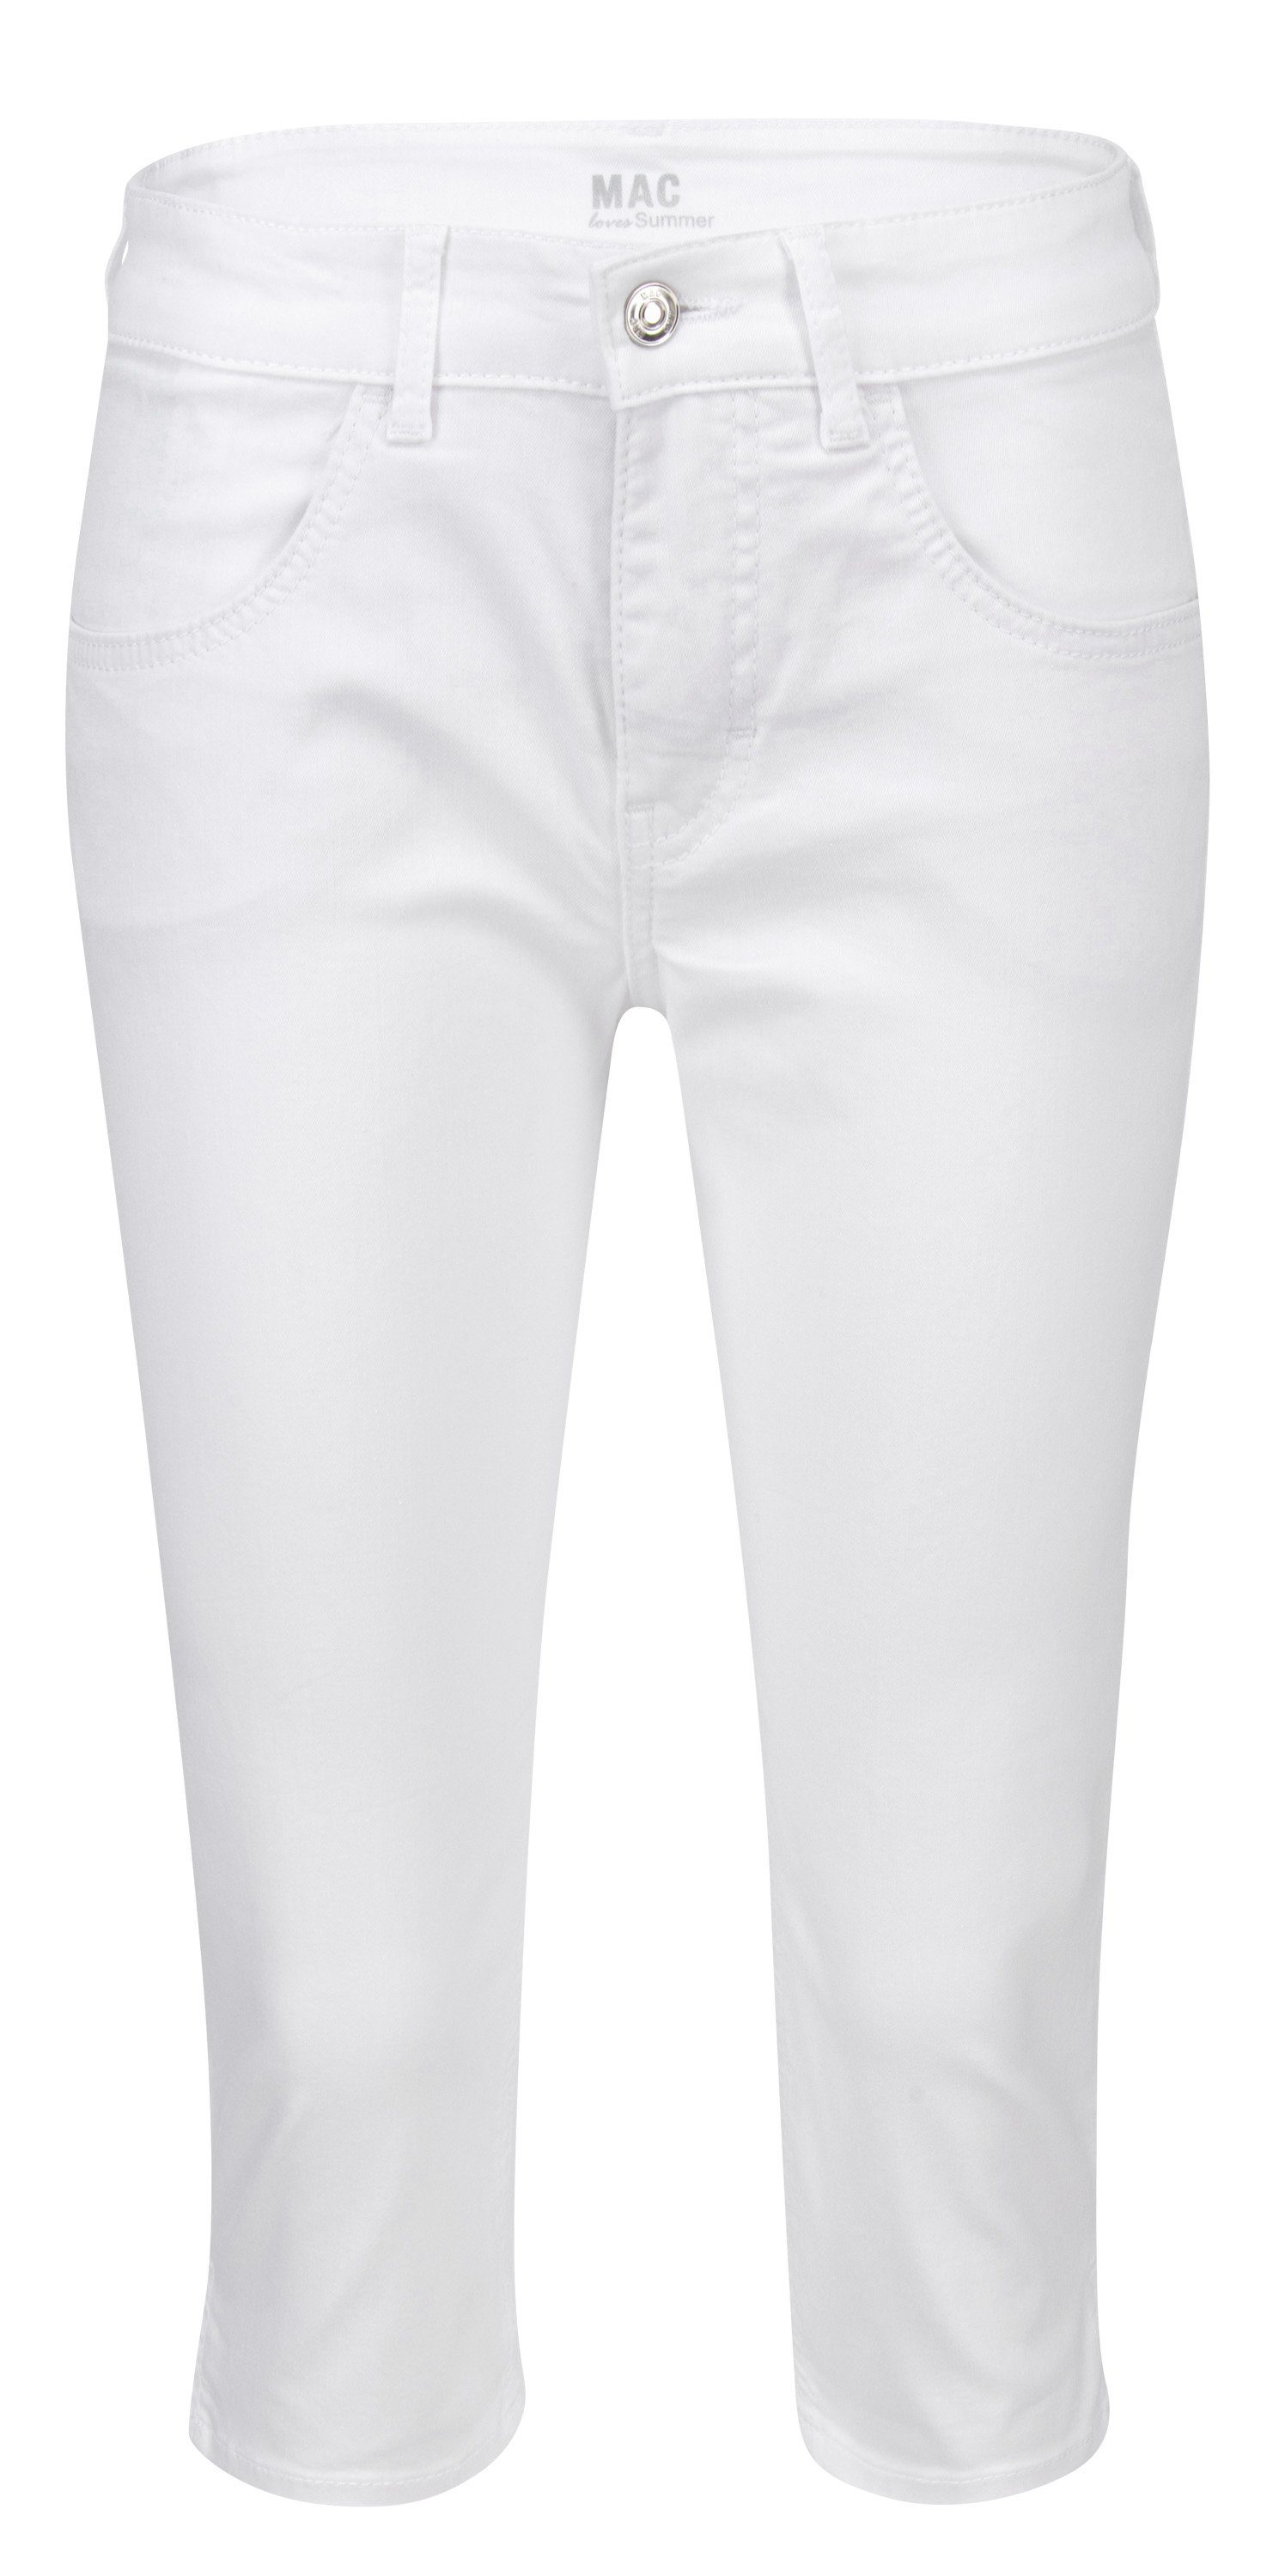 MAC Stretch-Jeans MAC CAPRI white denim 5917-90-0394 D010 | Stretchjeans